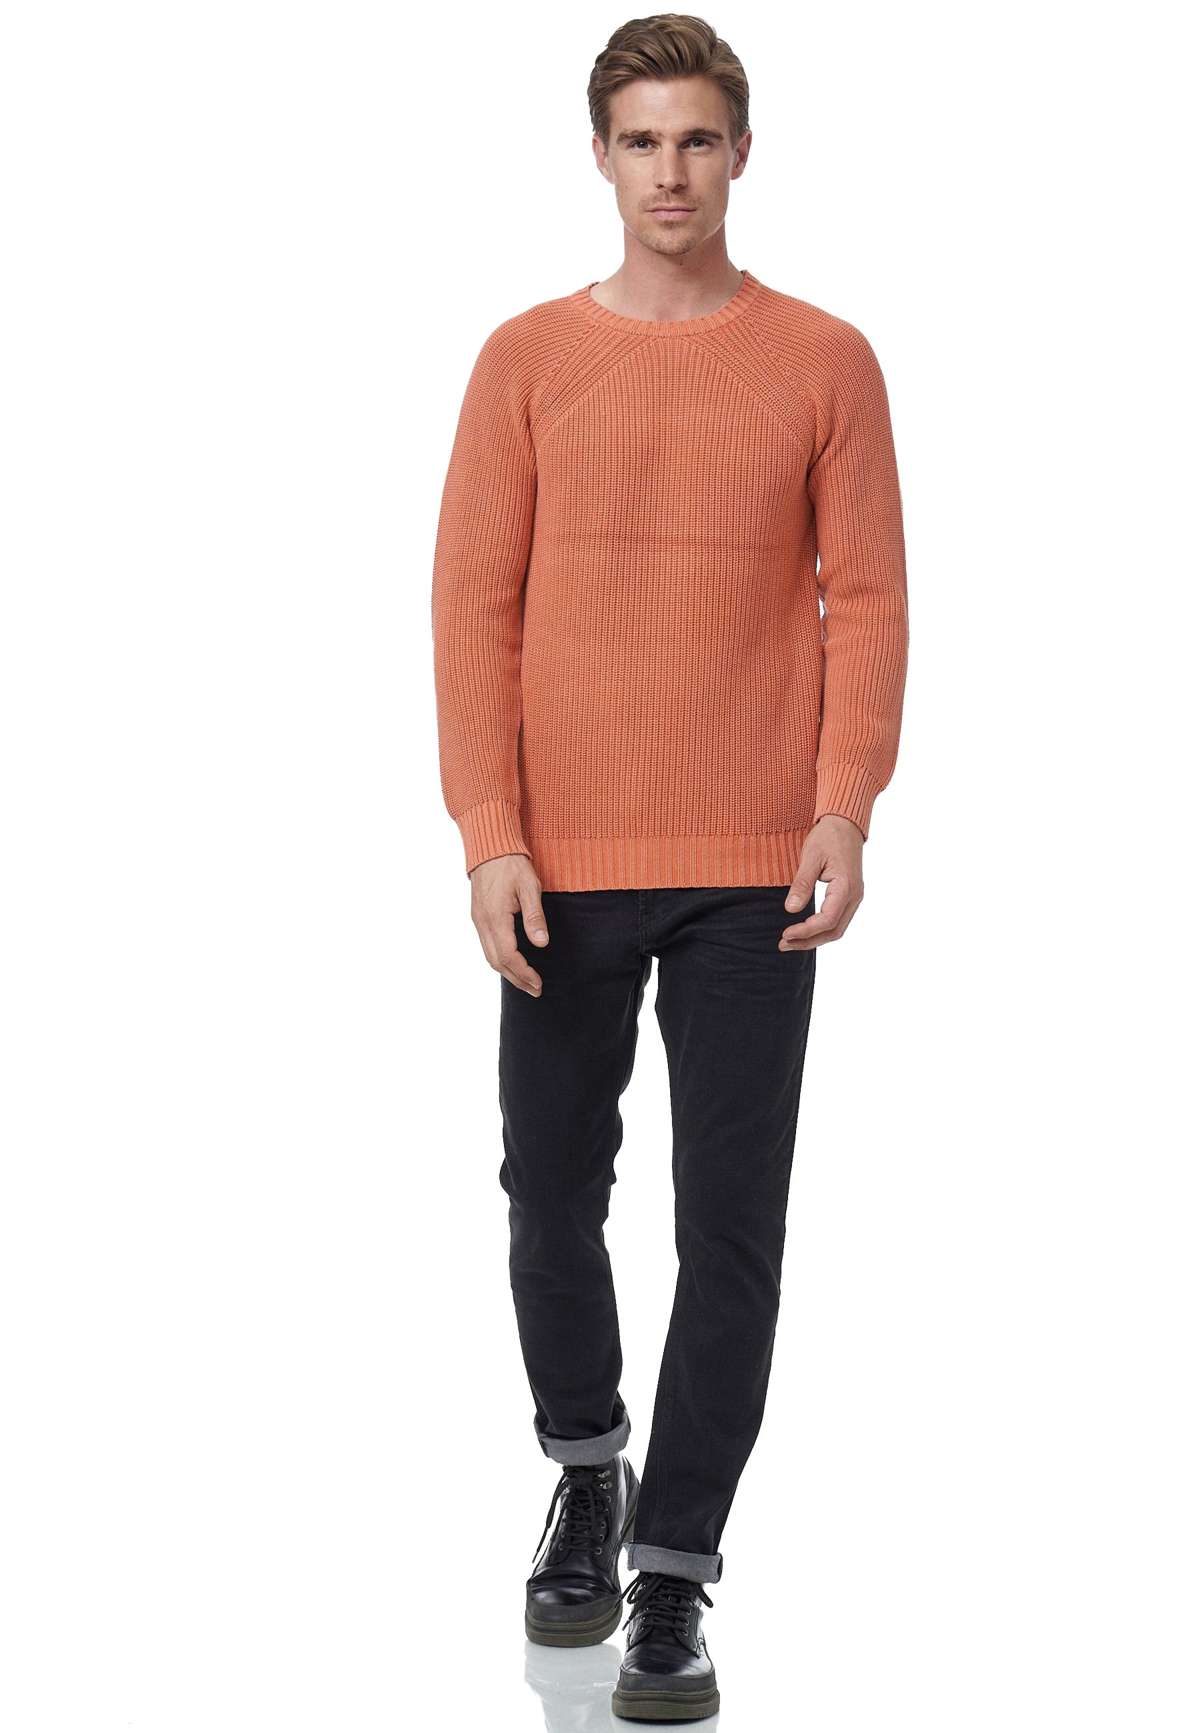 Вязаный свитер, простого дизайна.